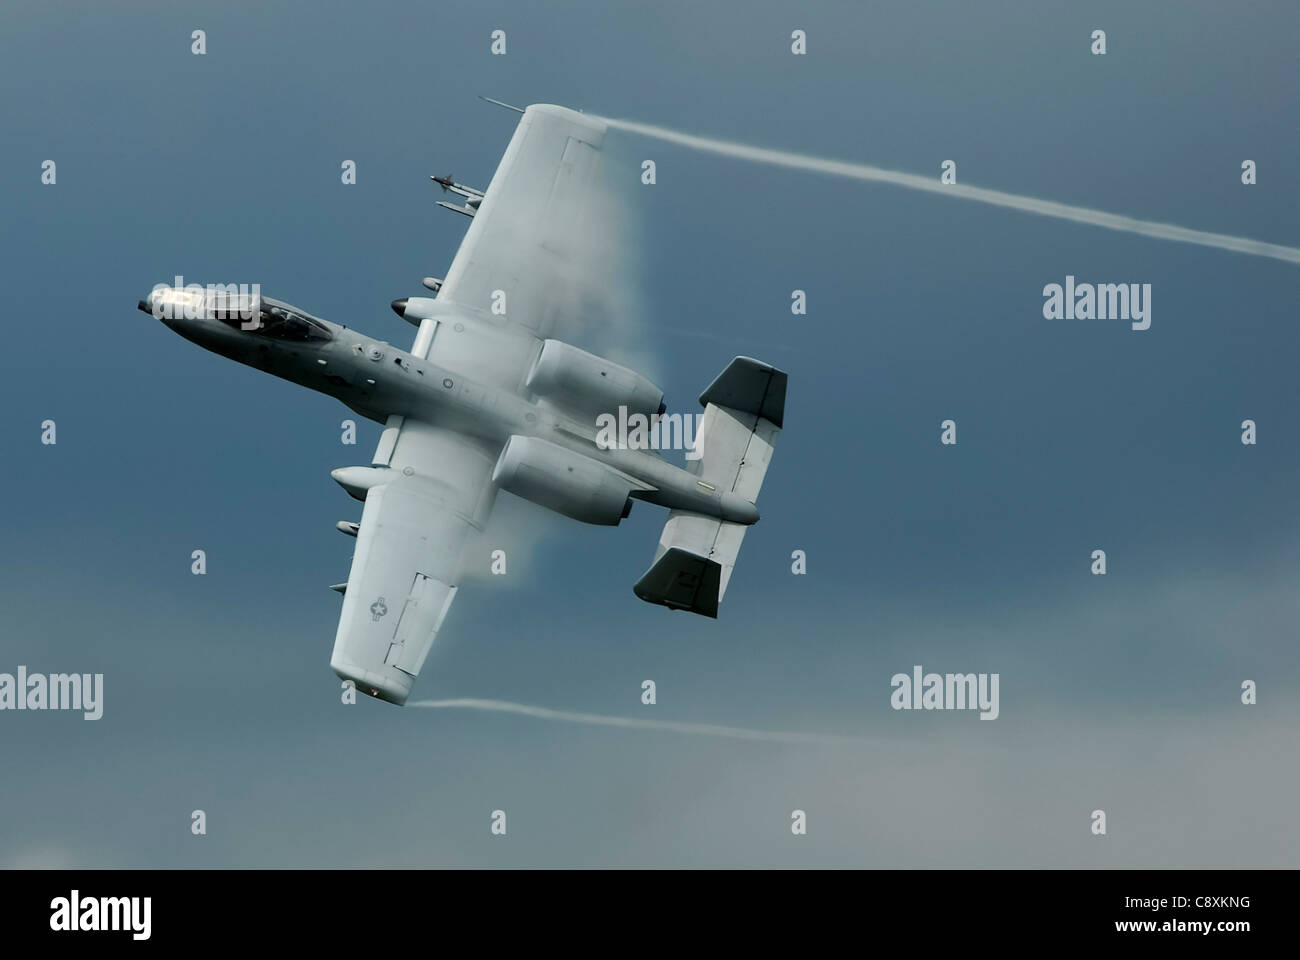 Un aereo da attacco a terra Thunderbolt II A-10 si solleva nettamente da una corsa di strafing di basso livello sull'Afghanistan. L'A-10 aggiornato digitalmente è dotato di armi di precisione guidate da satellite e di collegamenti dati di comunicazione avanzati per il trasferimento di informazioni con i combattenti terrestri. Foto Stock